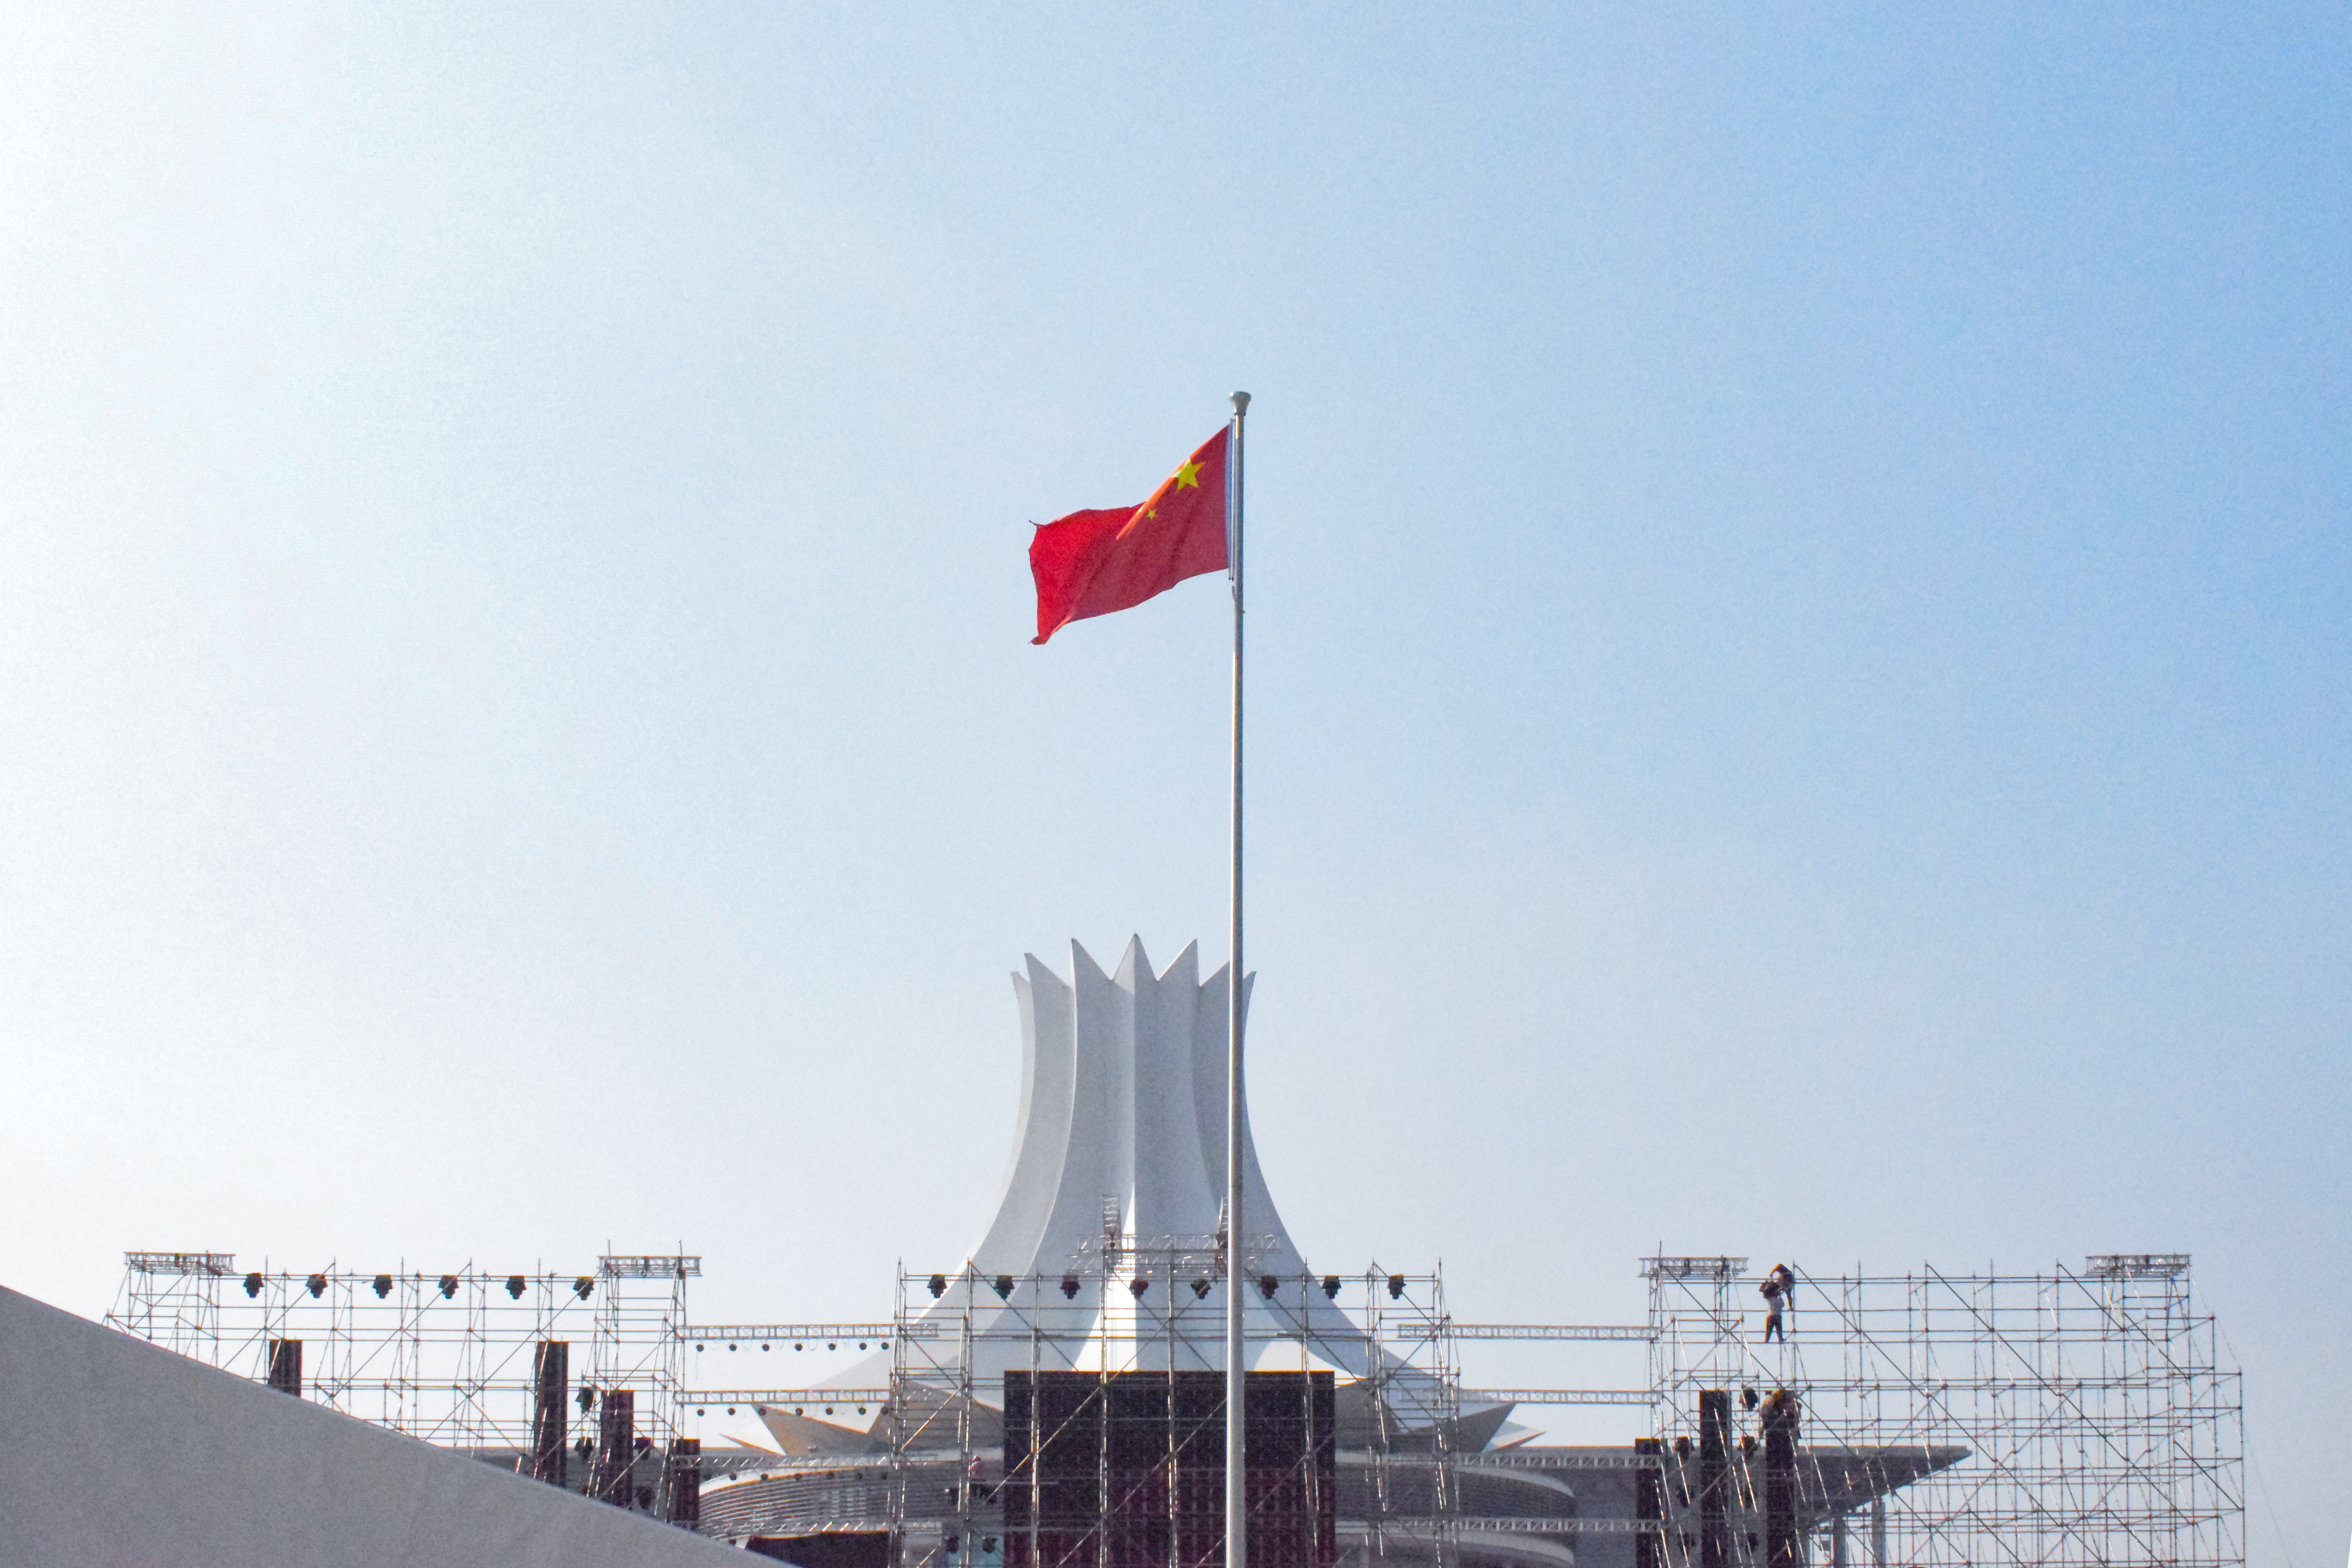 Chinesische Flagge